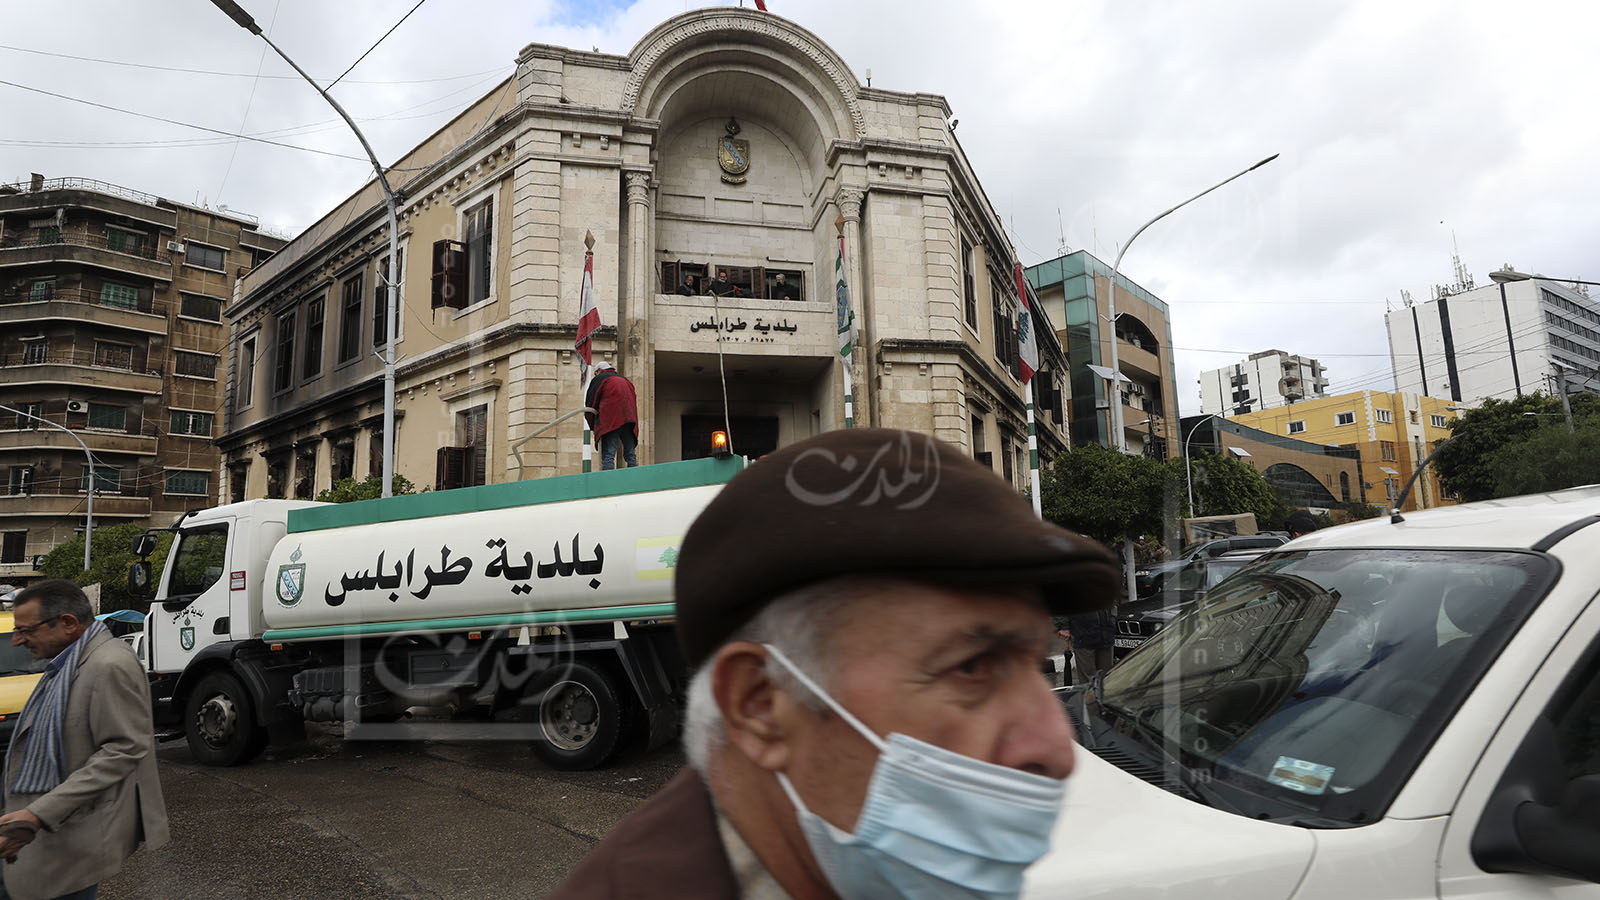 "الشورى" يوقف طرح الثقة بحق يمق: بلدية طرابلس معطوبة